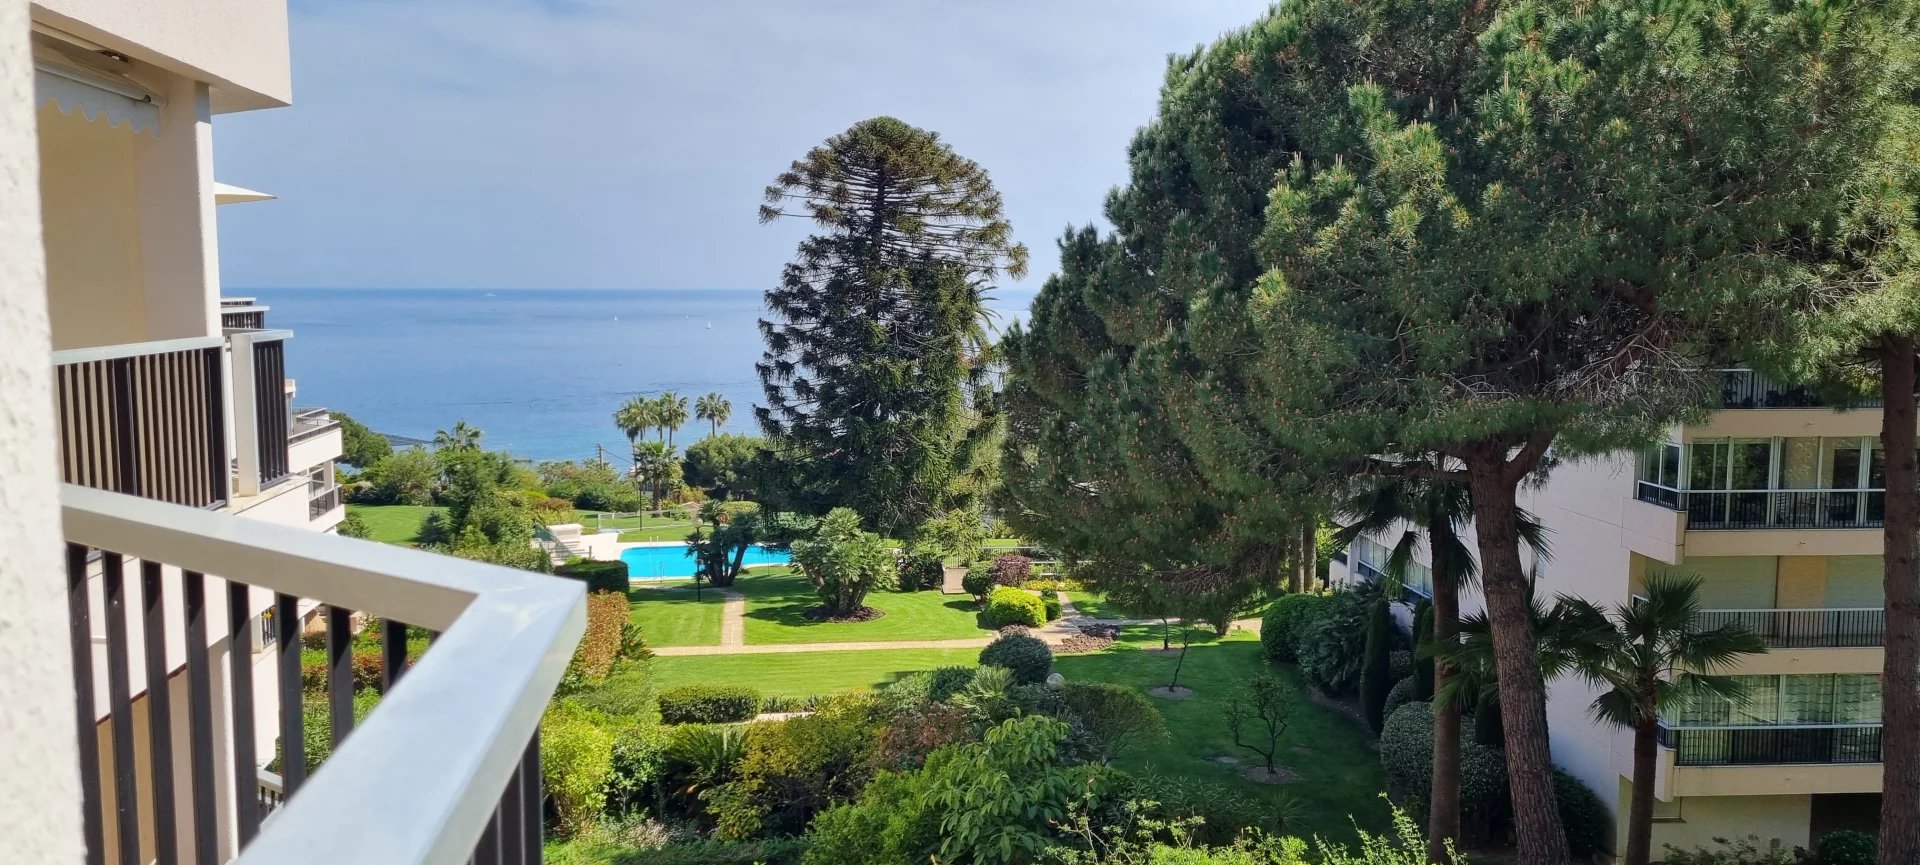 Lägenhet till salu i Cannes Californie med tennis och swimmingpool